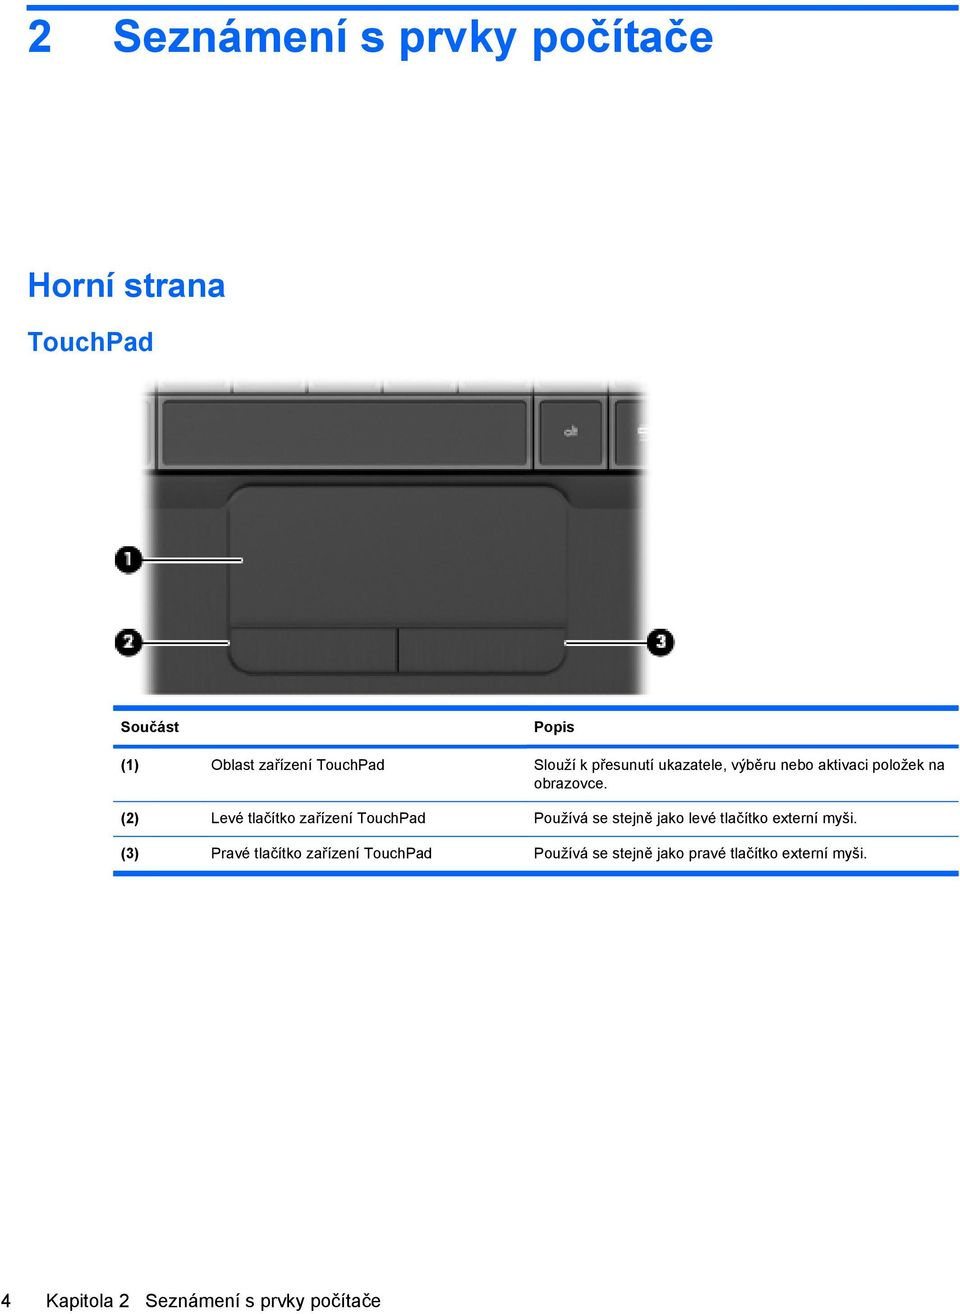 (2) Levé tlačítko zařízení TouchPad Používá se stejně jako levé tlačítko externí myši.